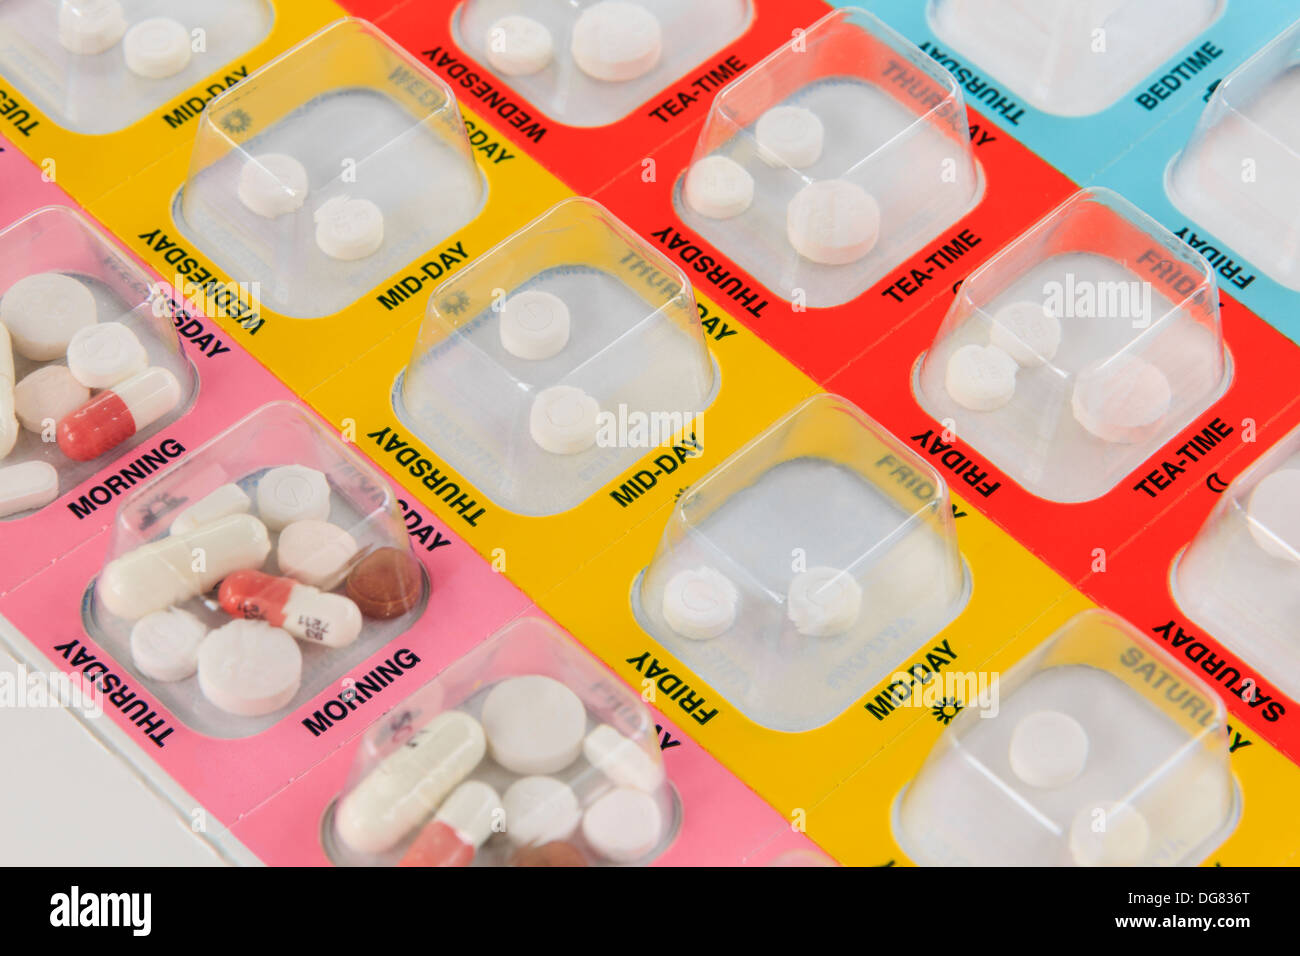 Medizin Manager Farbe blisterverpackung mit sieben Tage der Medikamente  vier Mal pro Tag jeden Tag codiert. England Großbritannien Stockfotografie  - Alamy